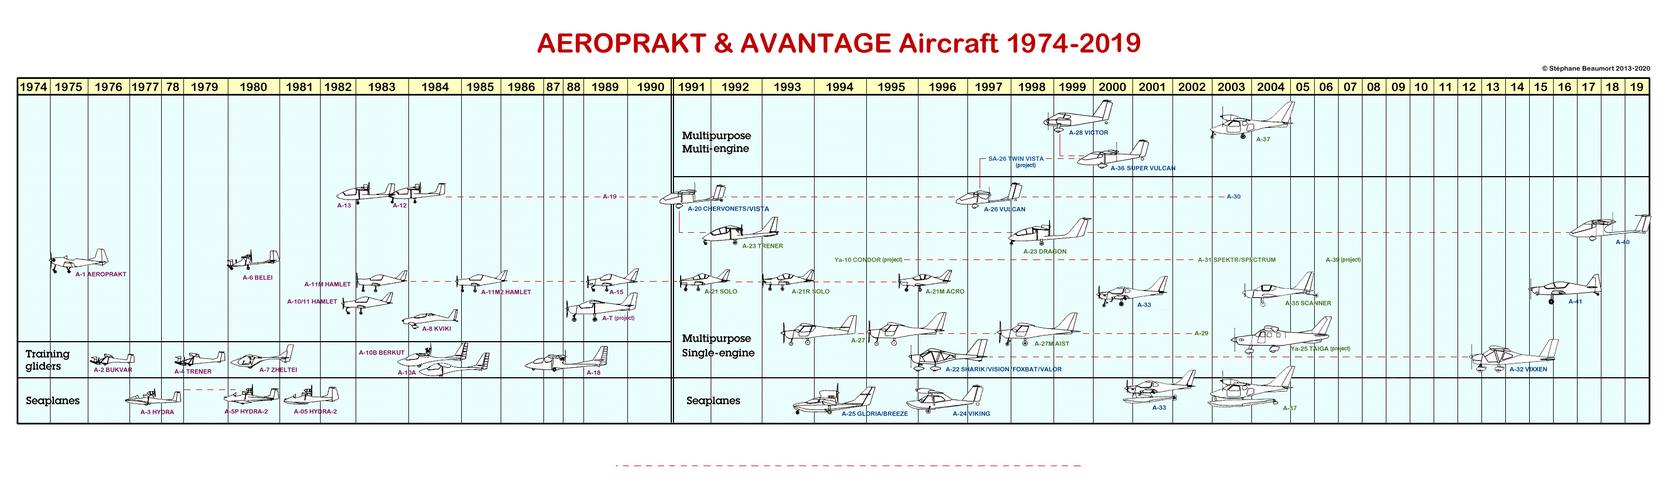 AEROPRAKT 1974-2020.png